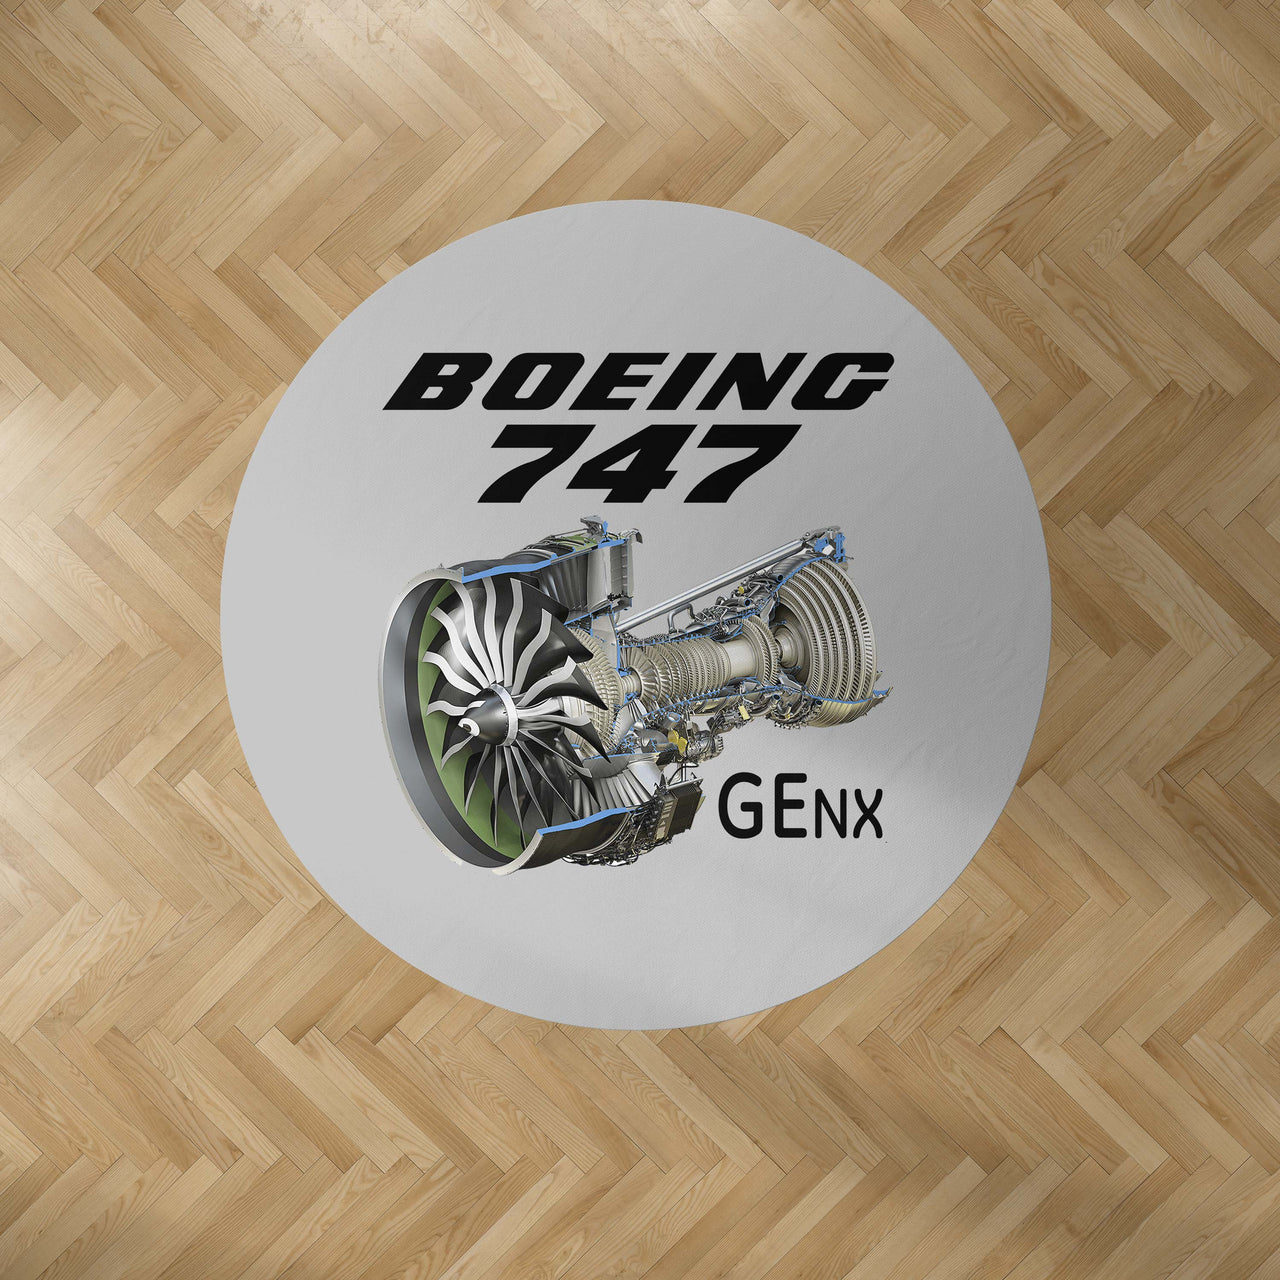 Boeing 747 & GENX Engine Designed Carpet & Floor Mats (Round)